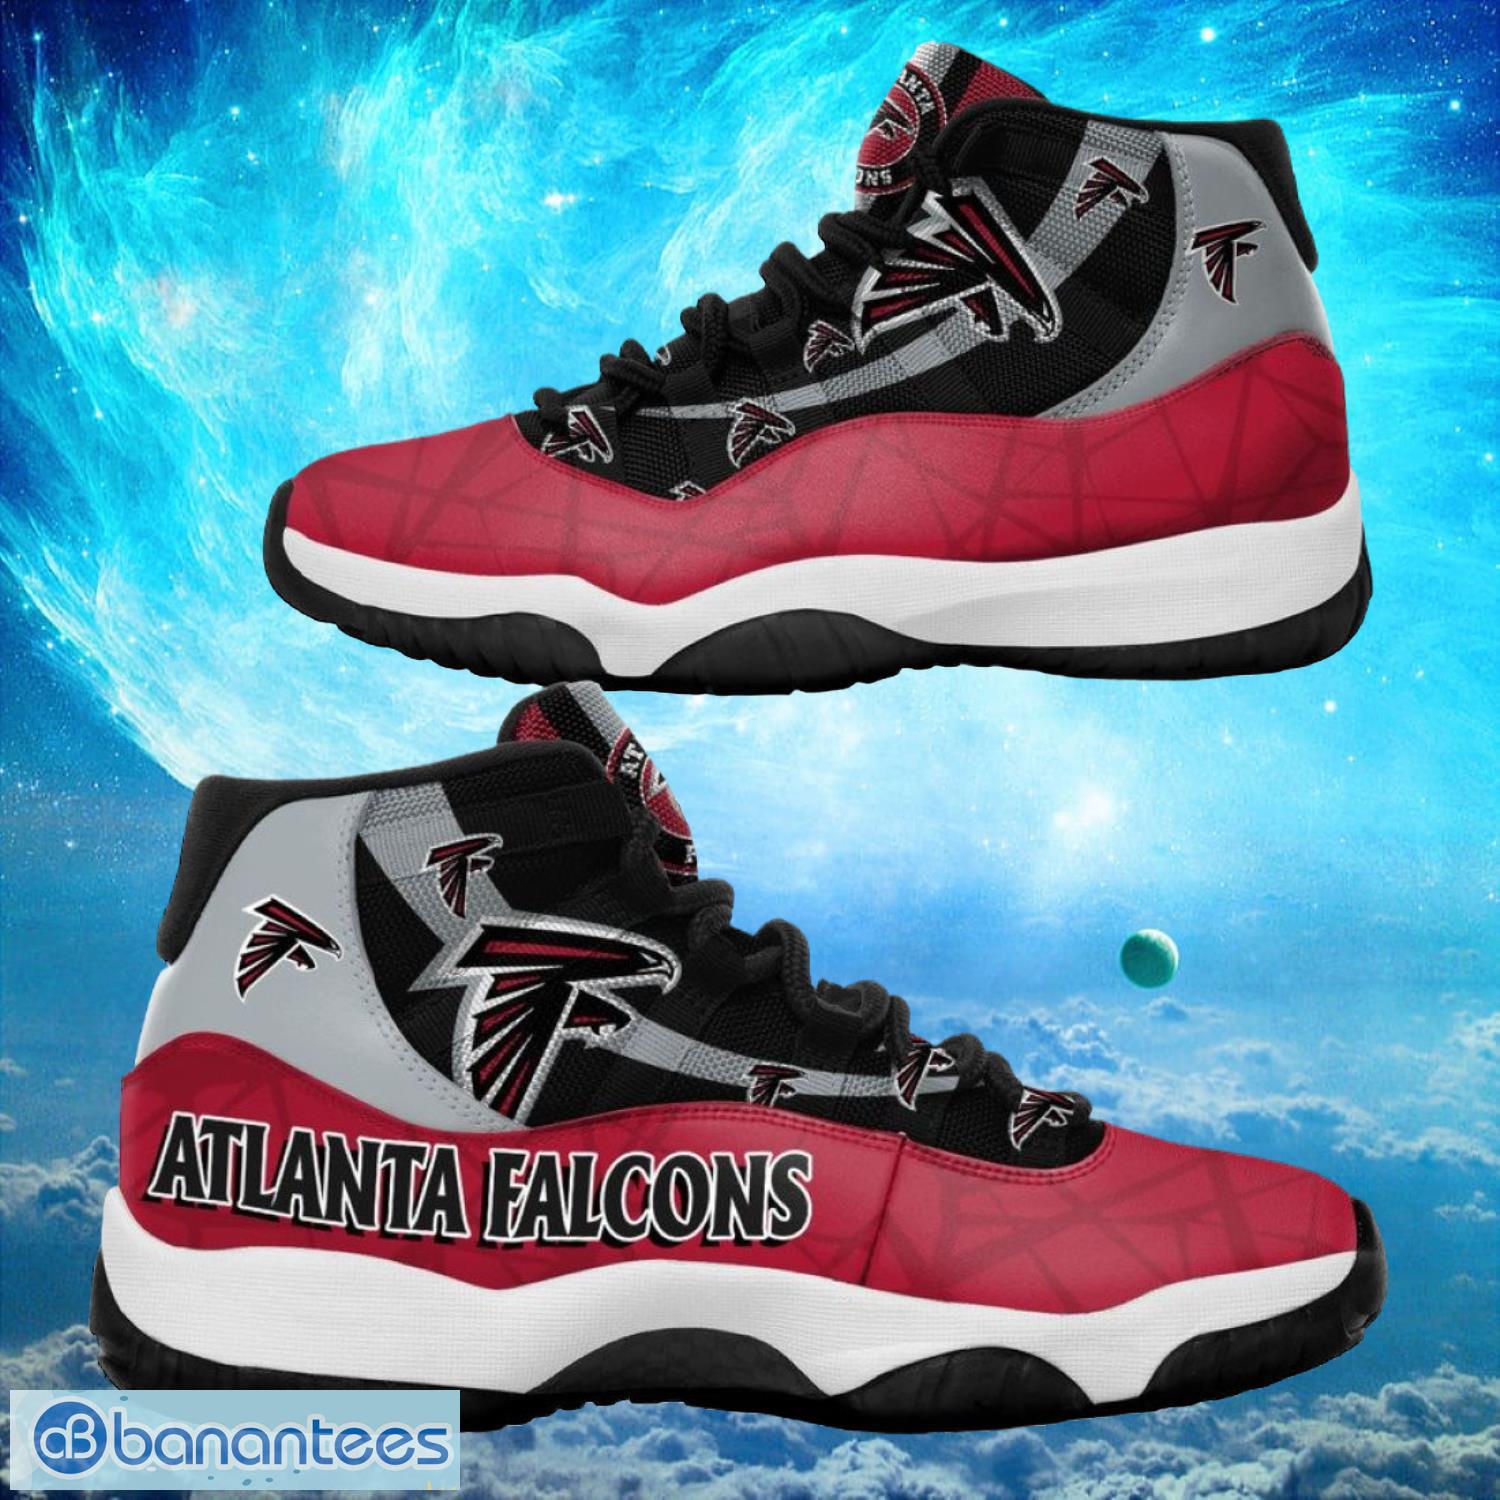 Atlanta Falcons NFL Air Jordan 11 Sneakers Shoes Gift For Fans